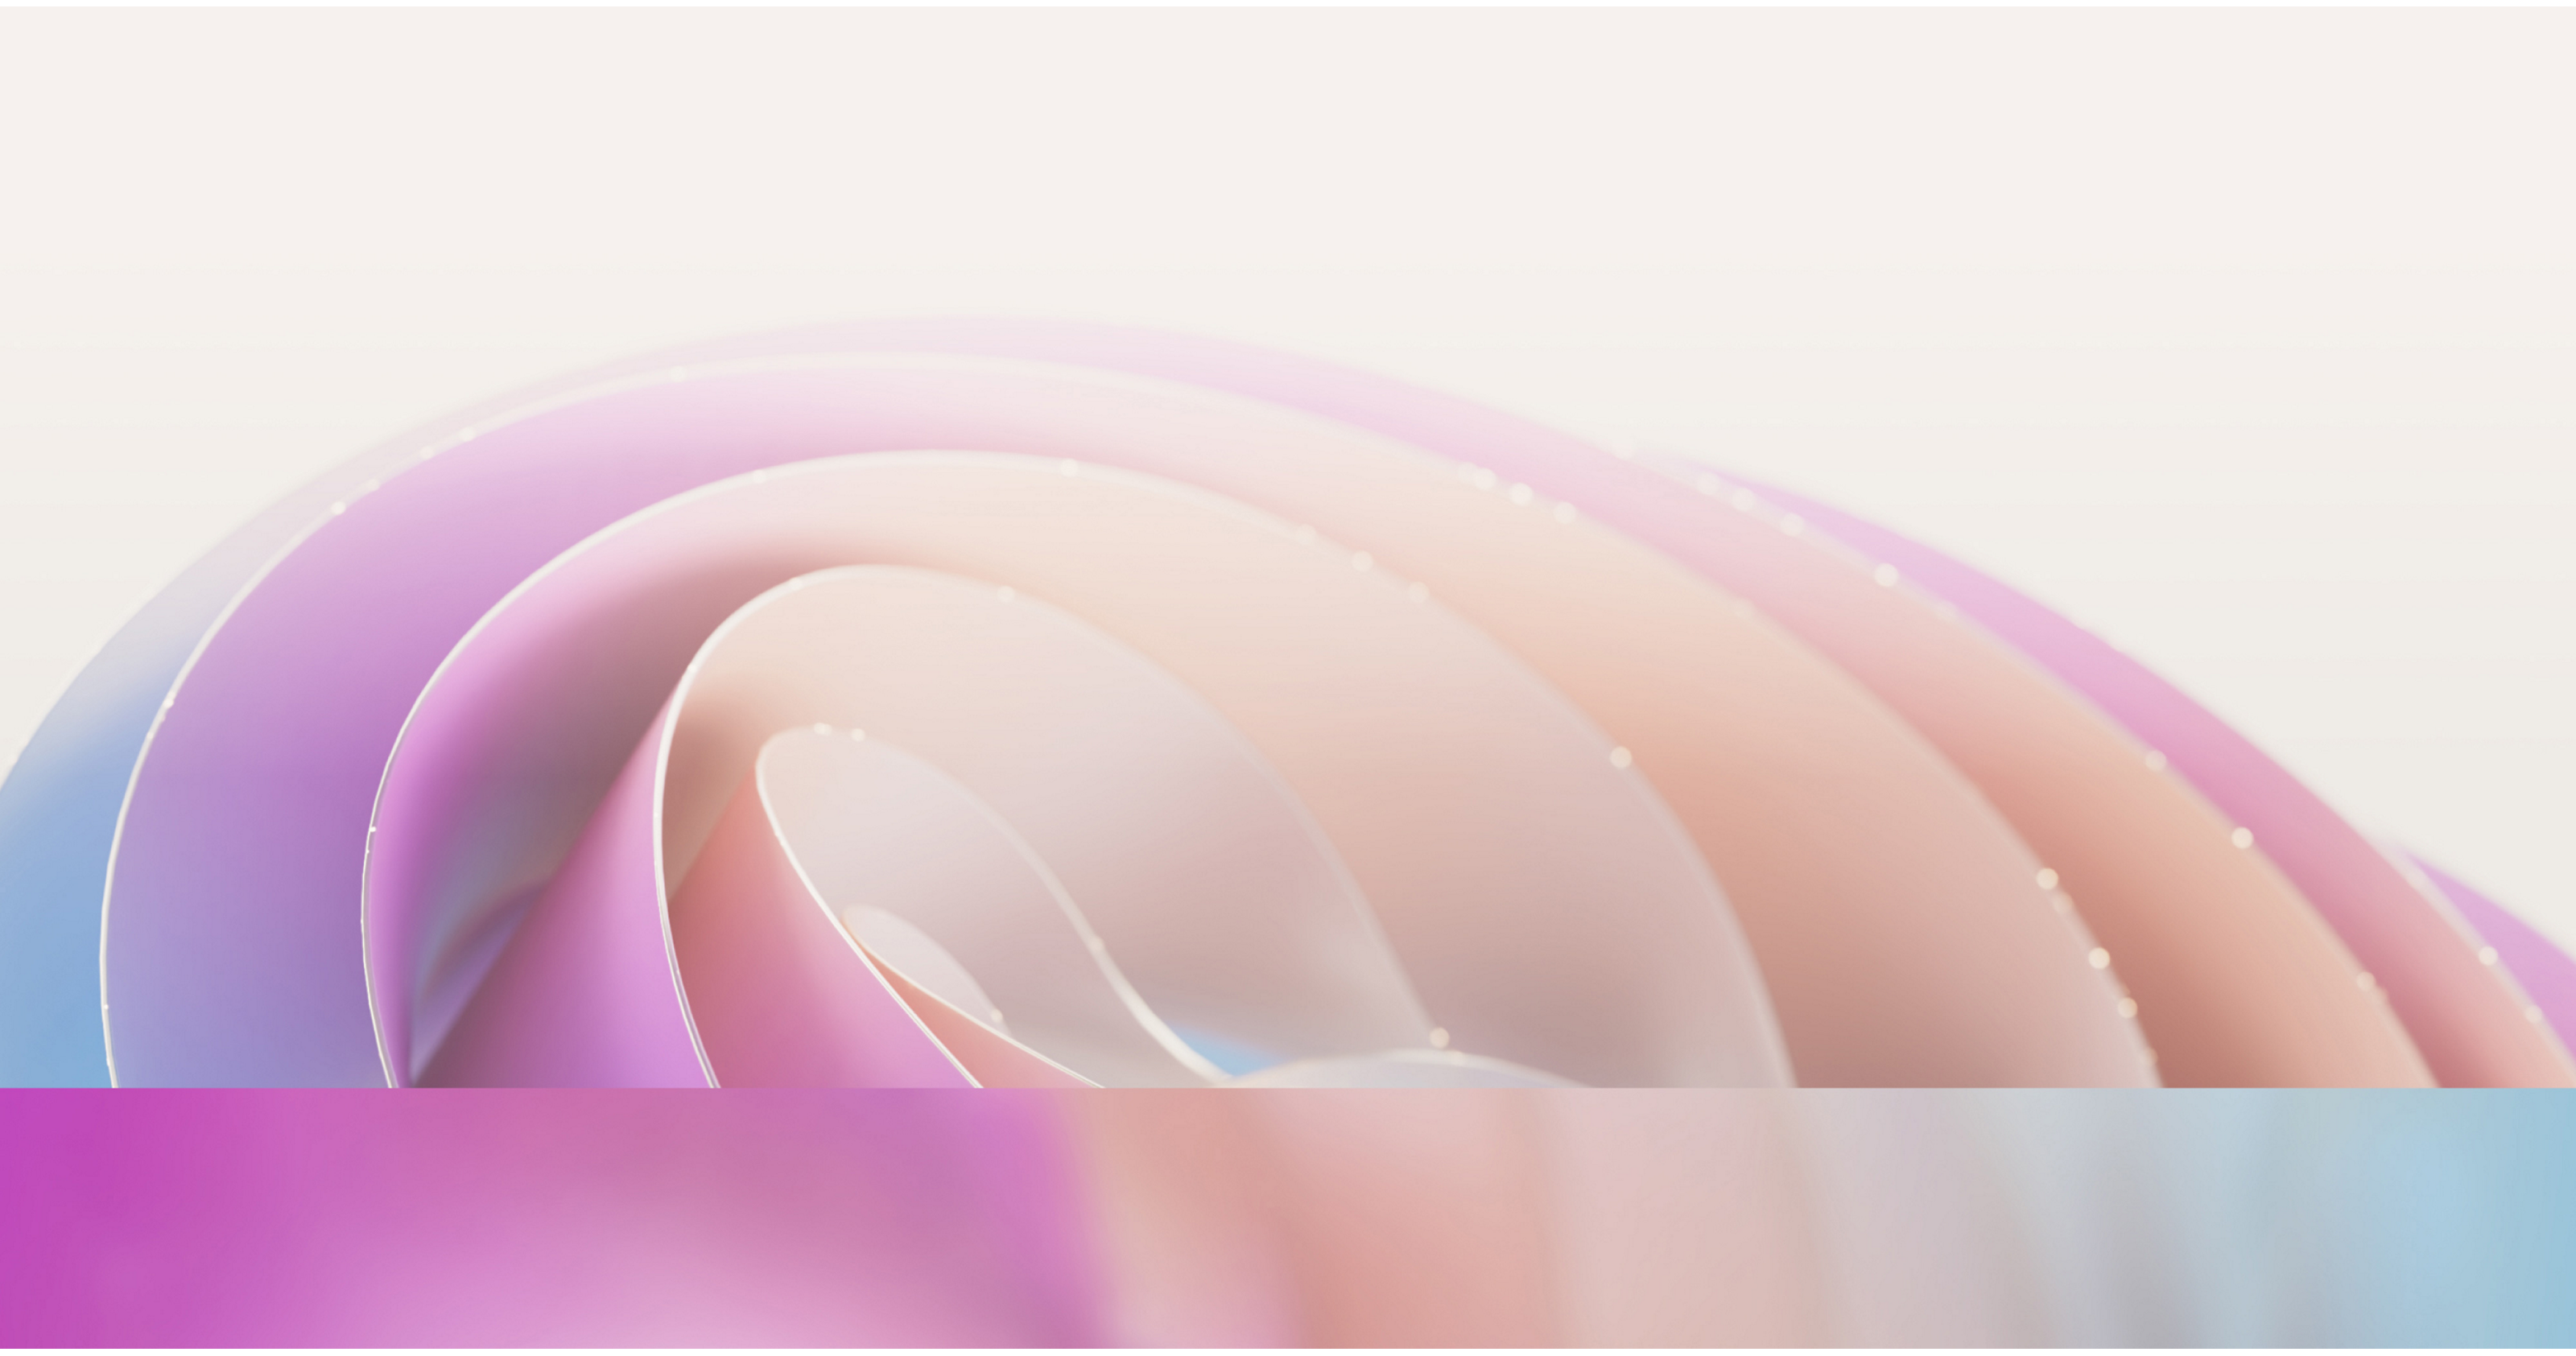 Immagine astratta con curve dolci e morbide nelle tonalità sfumate di rosa e viola, per un effetto tenue e luminoso.